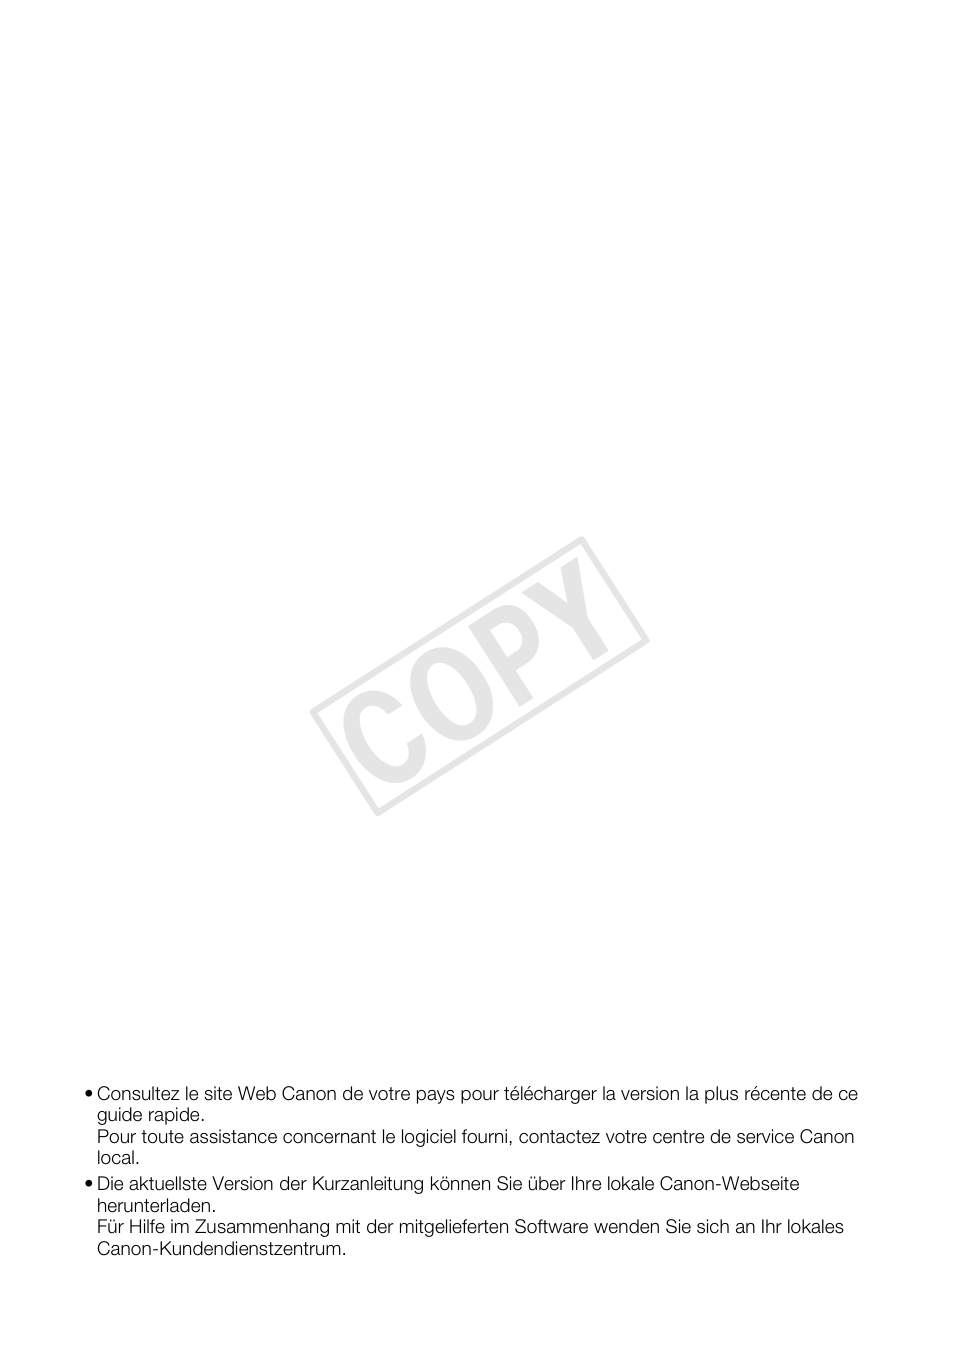 Cop y | Canon XA25 Manuel d'utilisation | Page 190 / 191